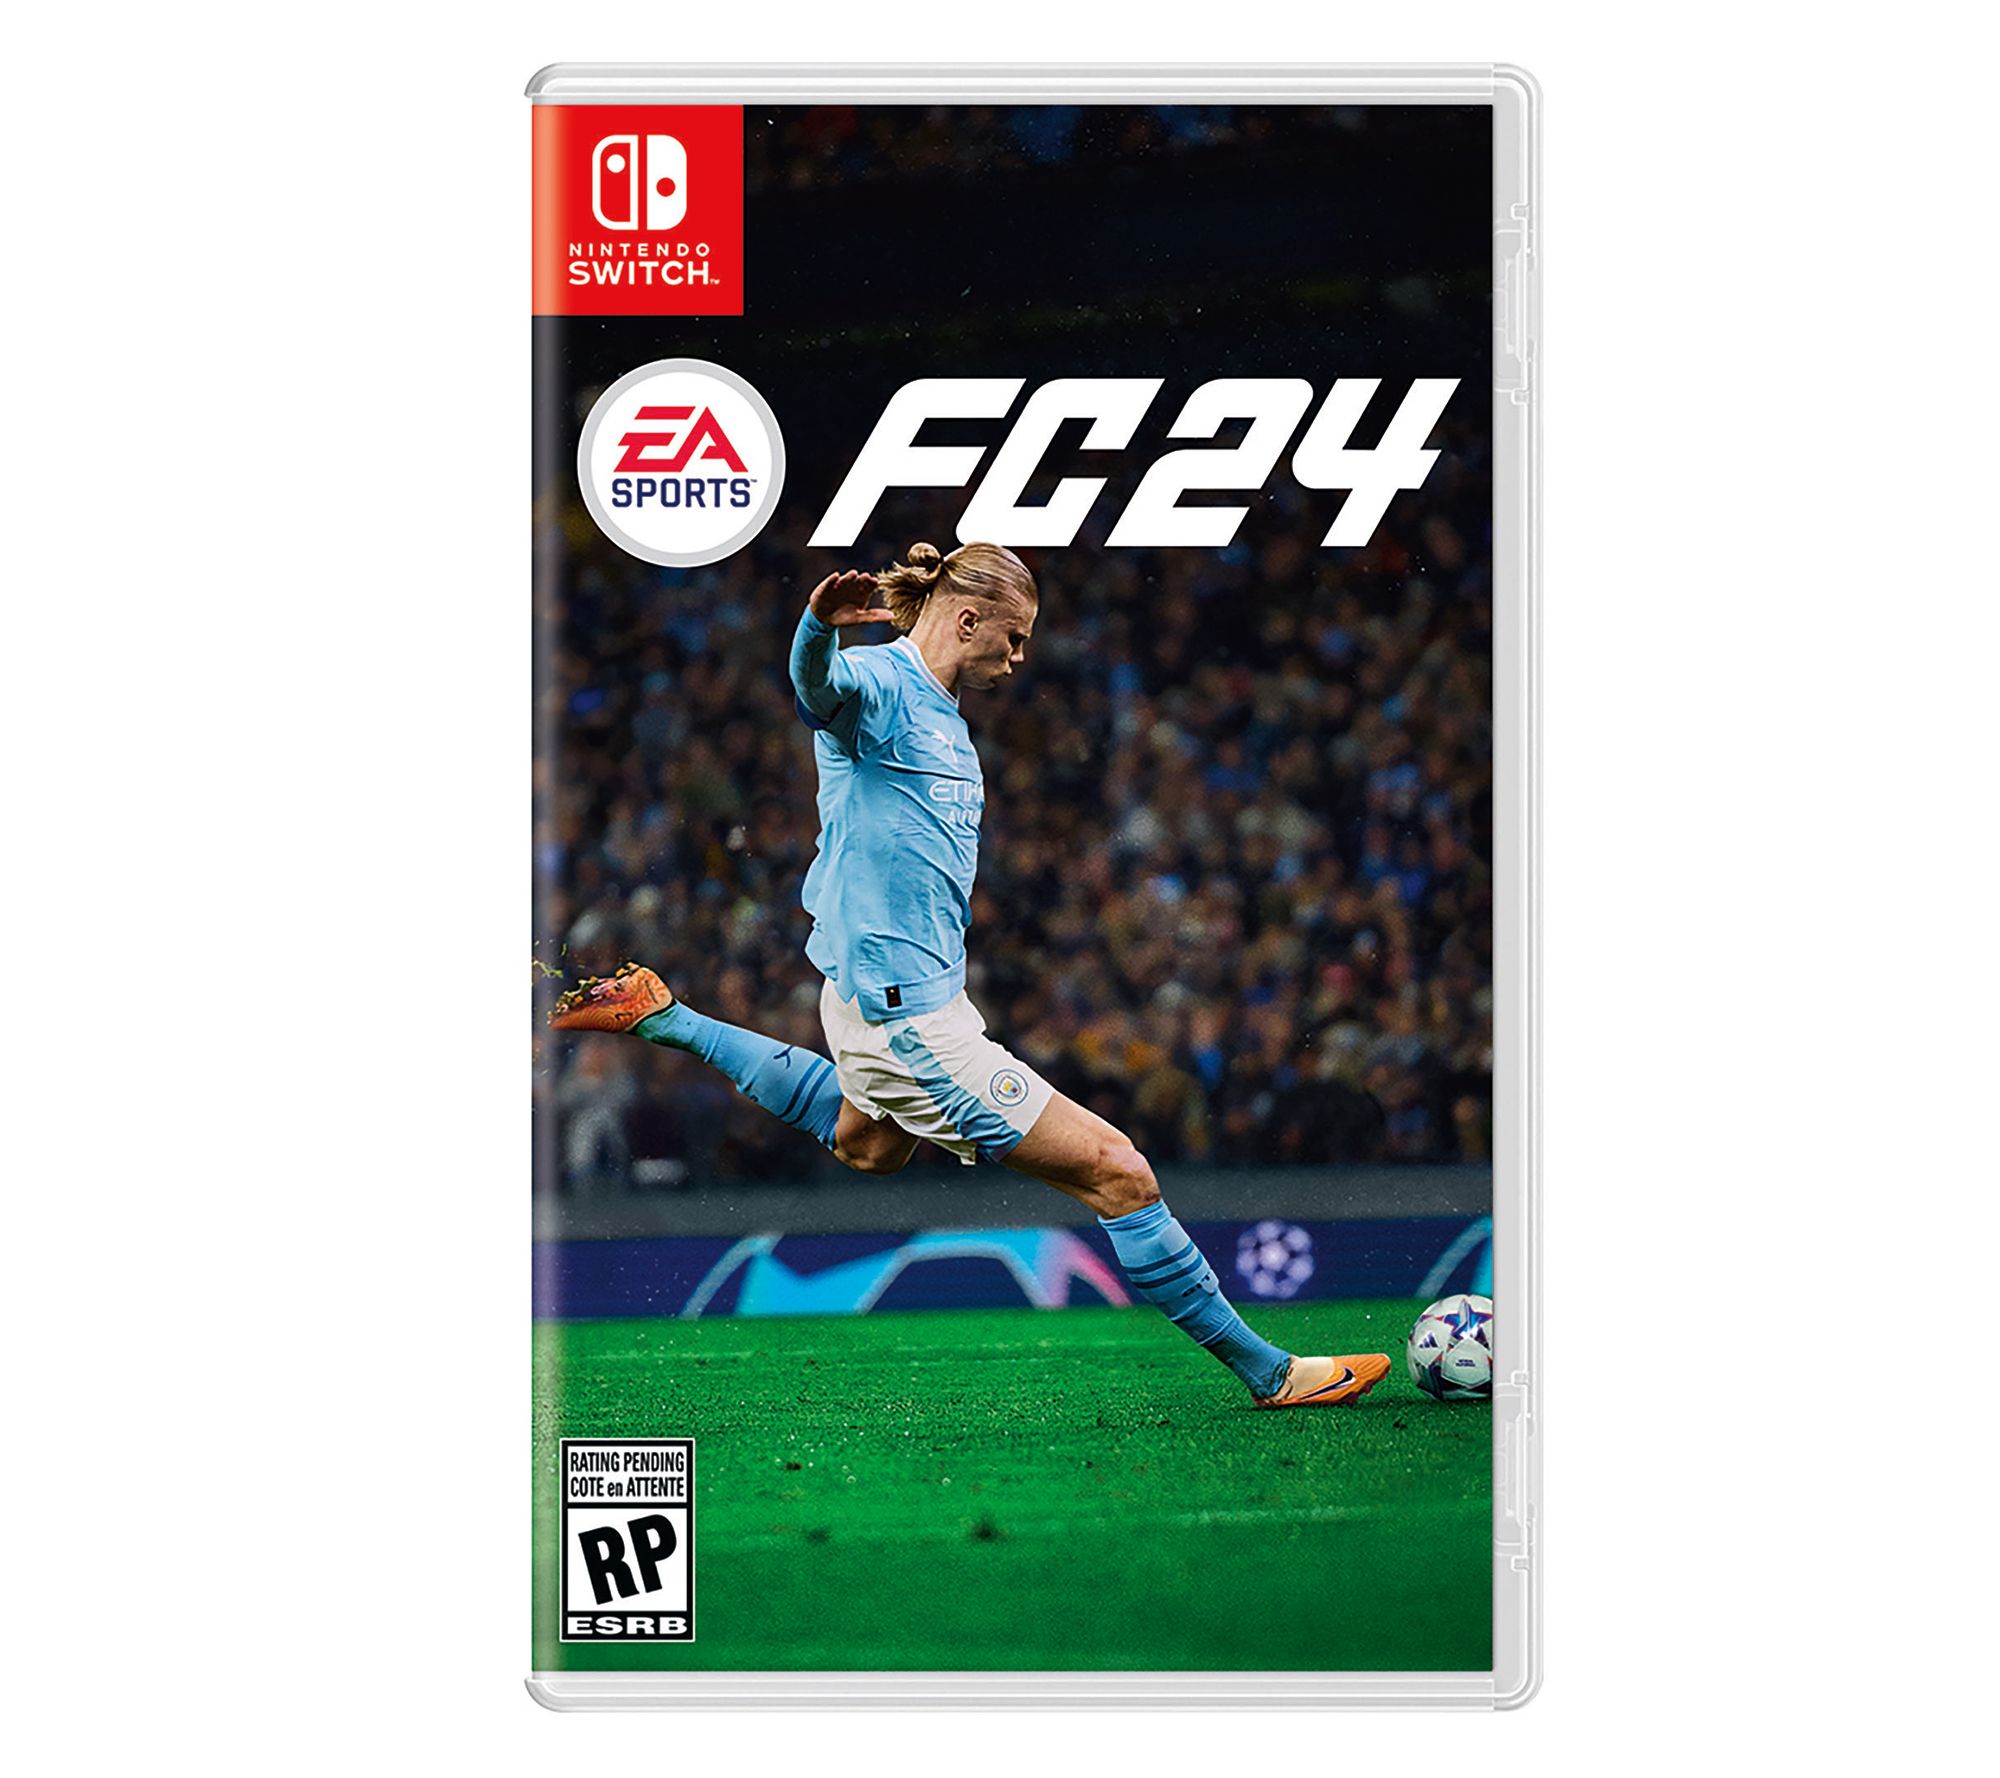 EA SPORTS FCTM 24 - PS4